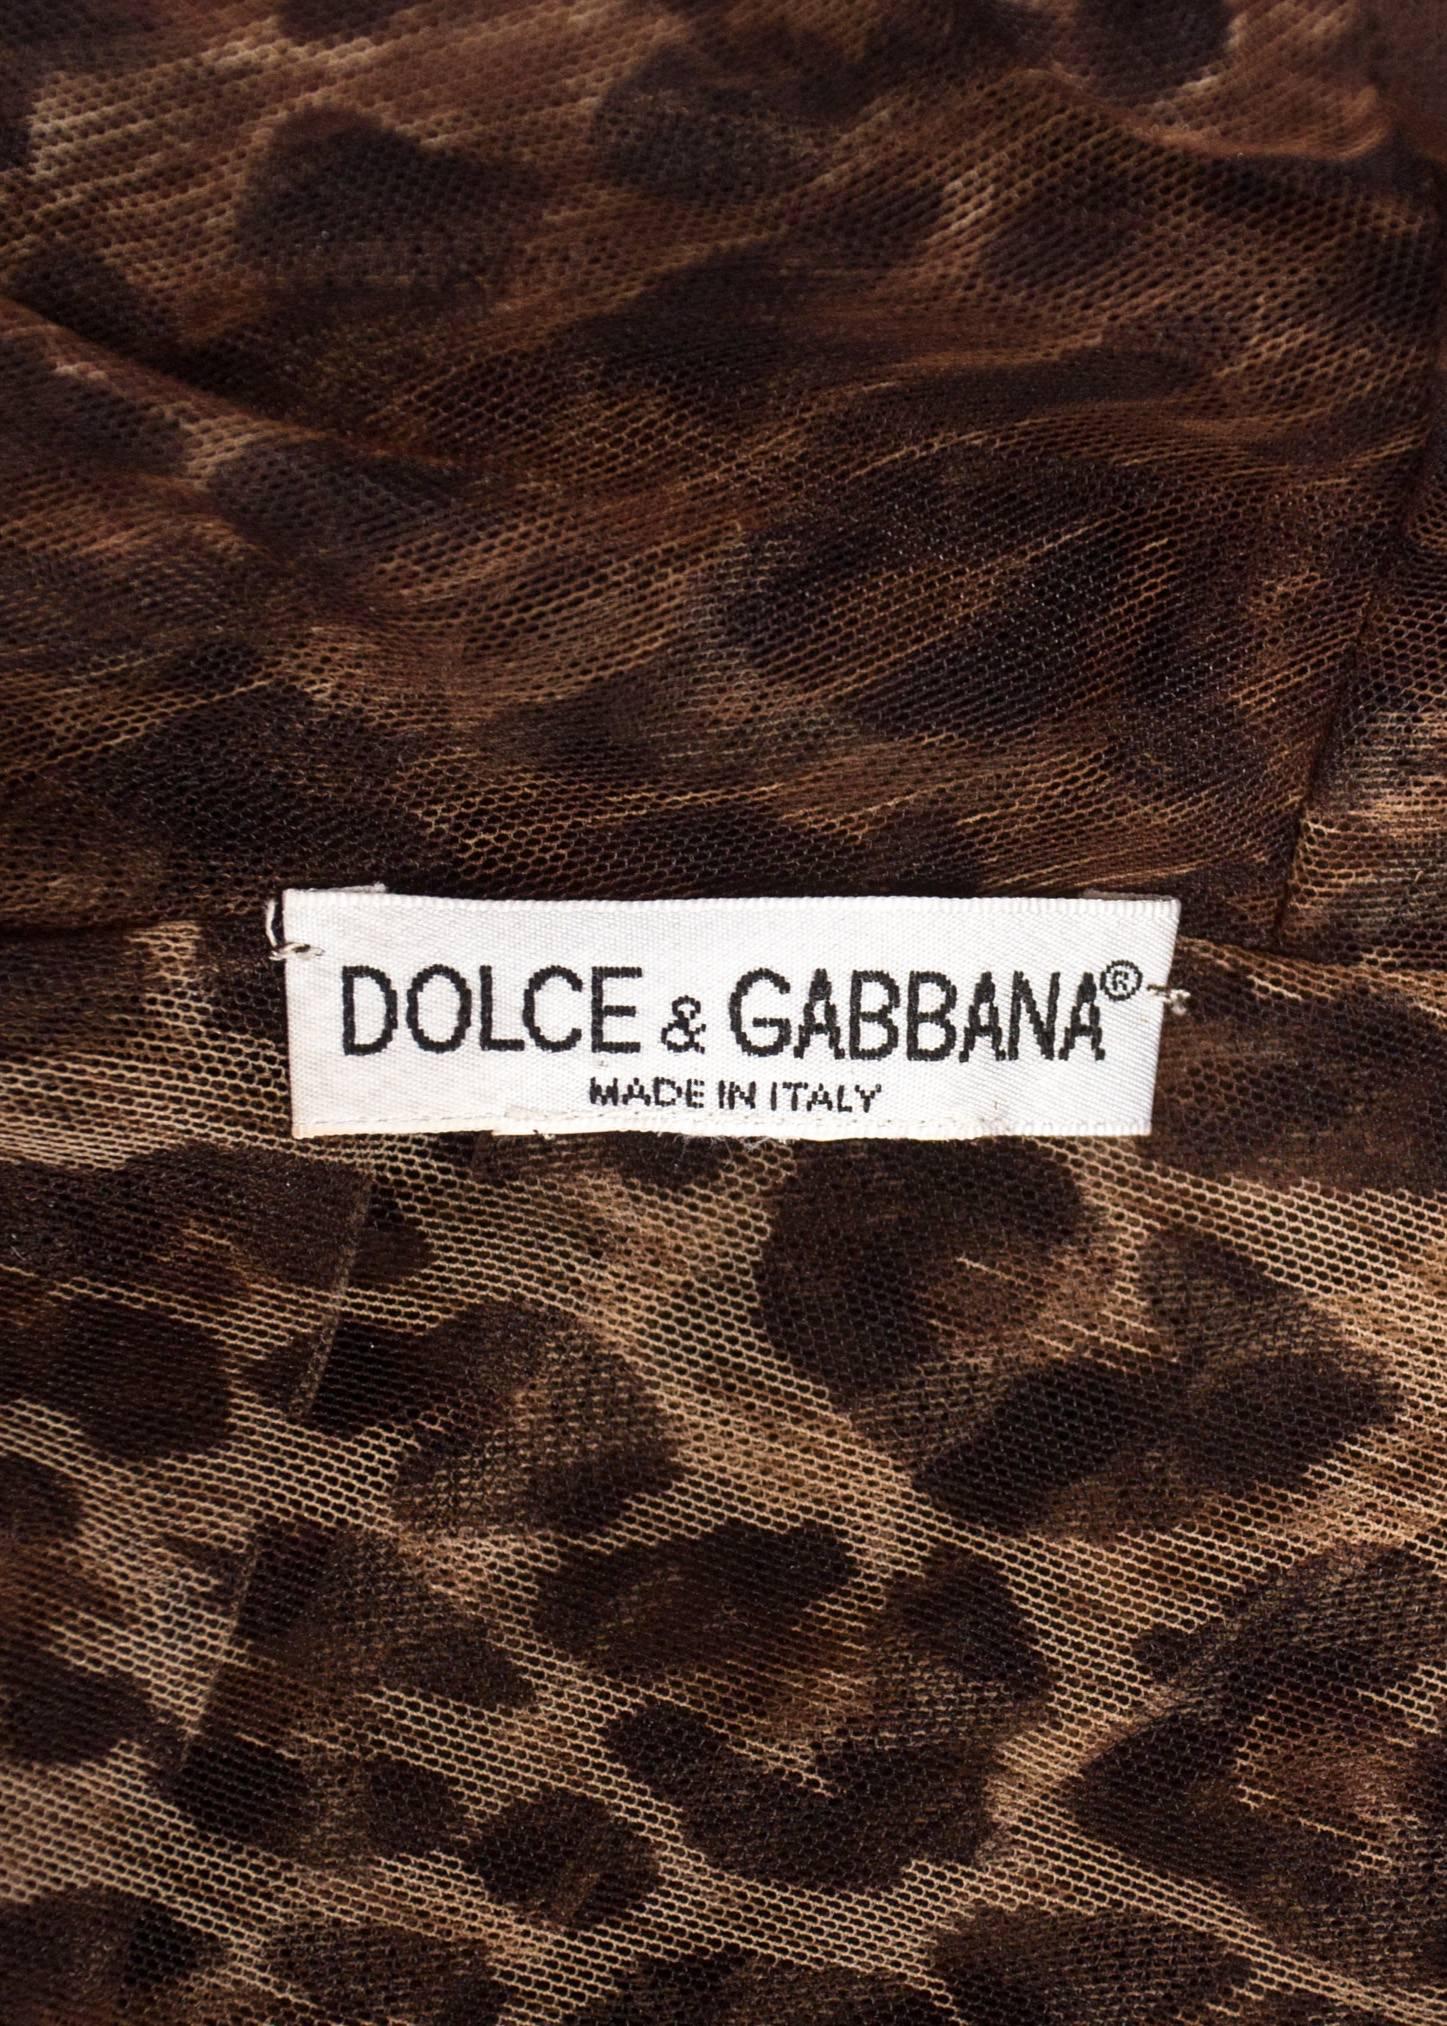 Dolce & Gabbana Spring-Summer 1997 leopard print mesh evening dress 1